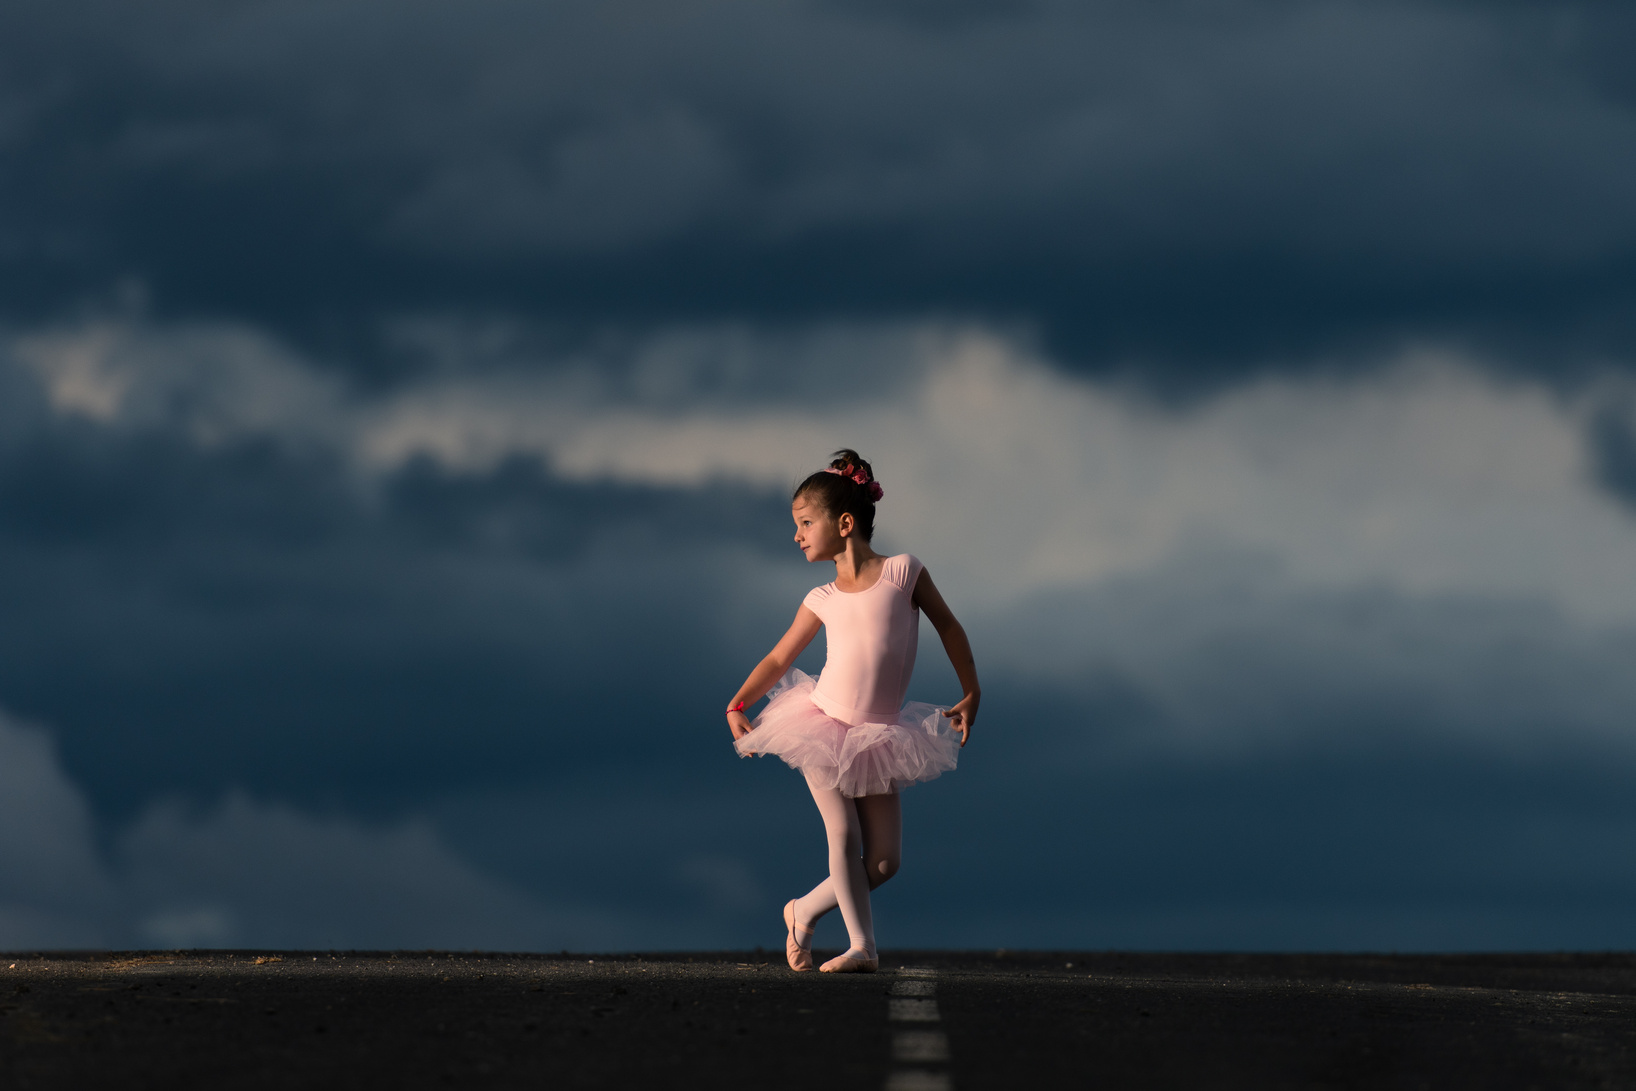 Ballet dancer child